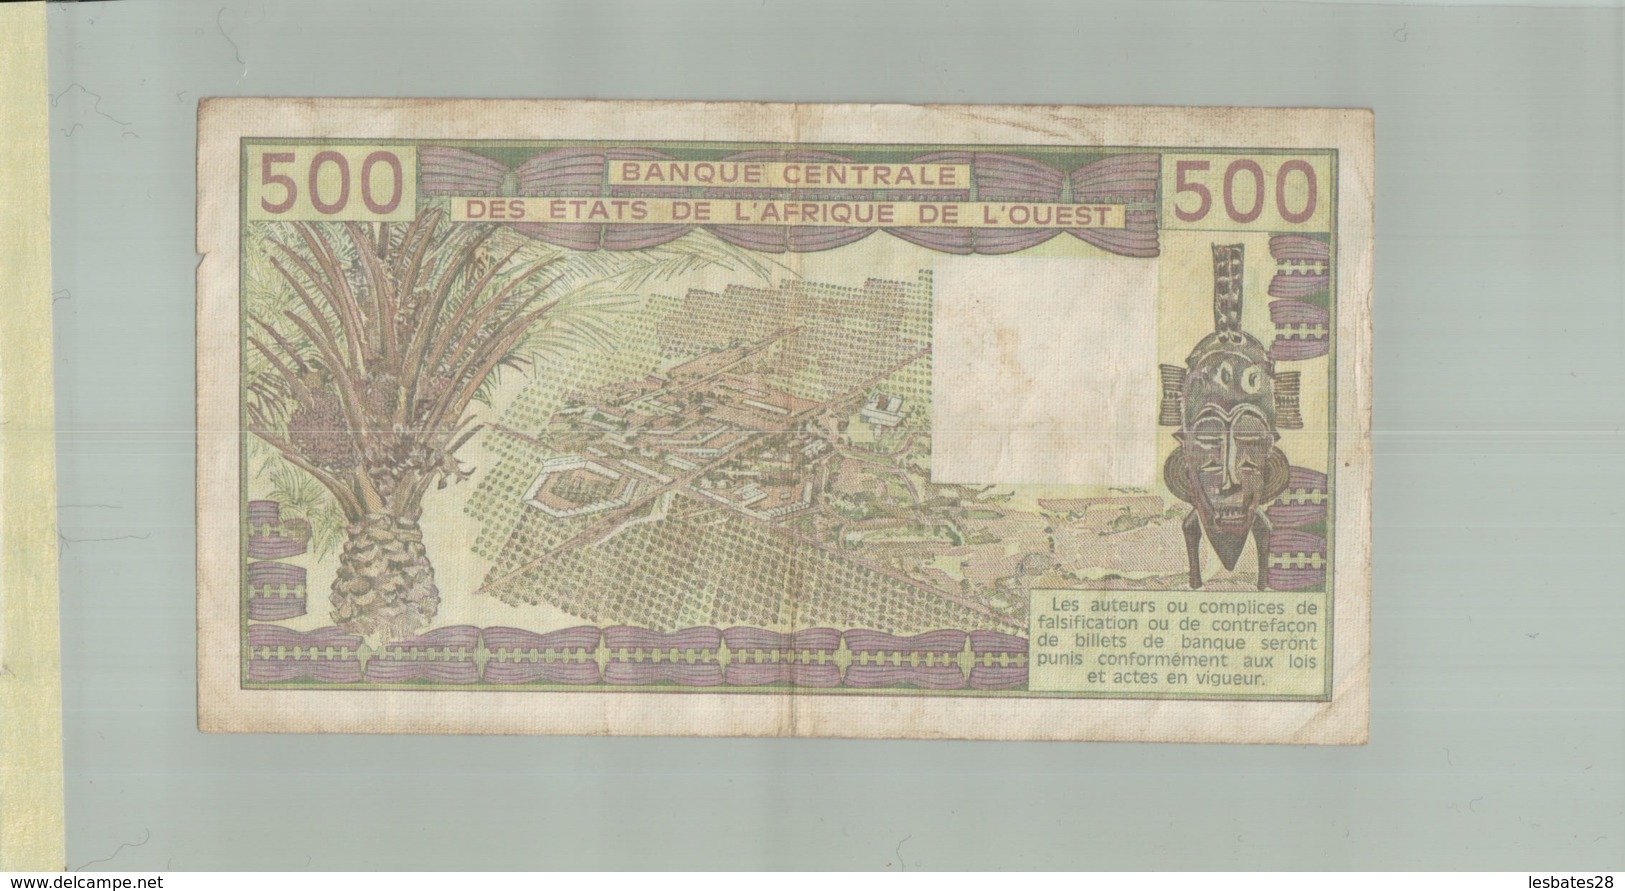 BILLET DE BANQUE  BANQUE CENTRALE DES ETATS DE L'AFRIQUE DE L'OUEST   500  " SENEGAL -  1985 K"        Sept 2019  Alb 16 - Stati Dell'Africa Occidentale